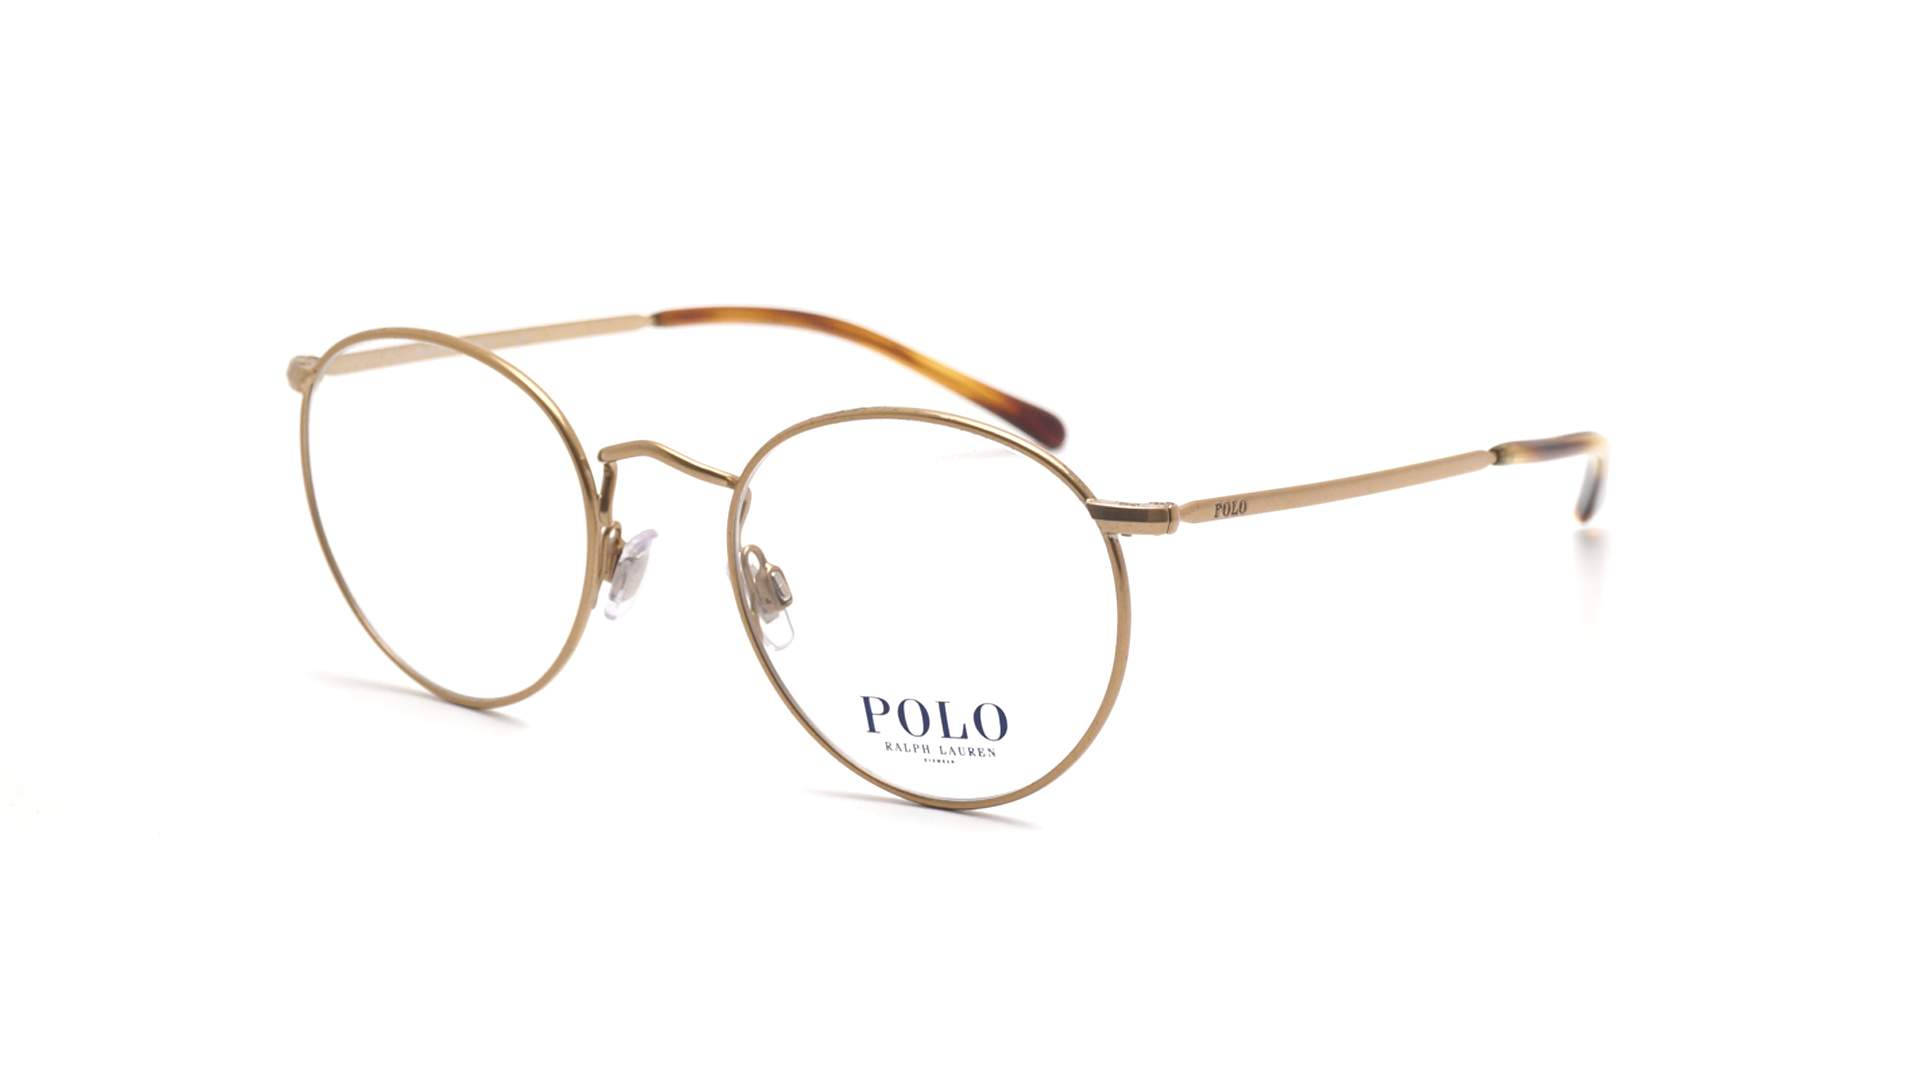 Polo Ralph Lauren Golden Glasses Wallpaper